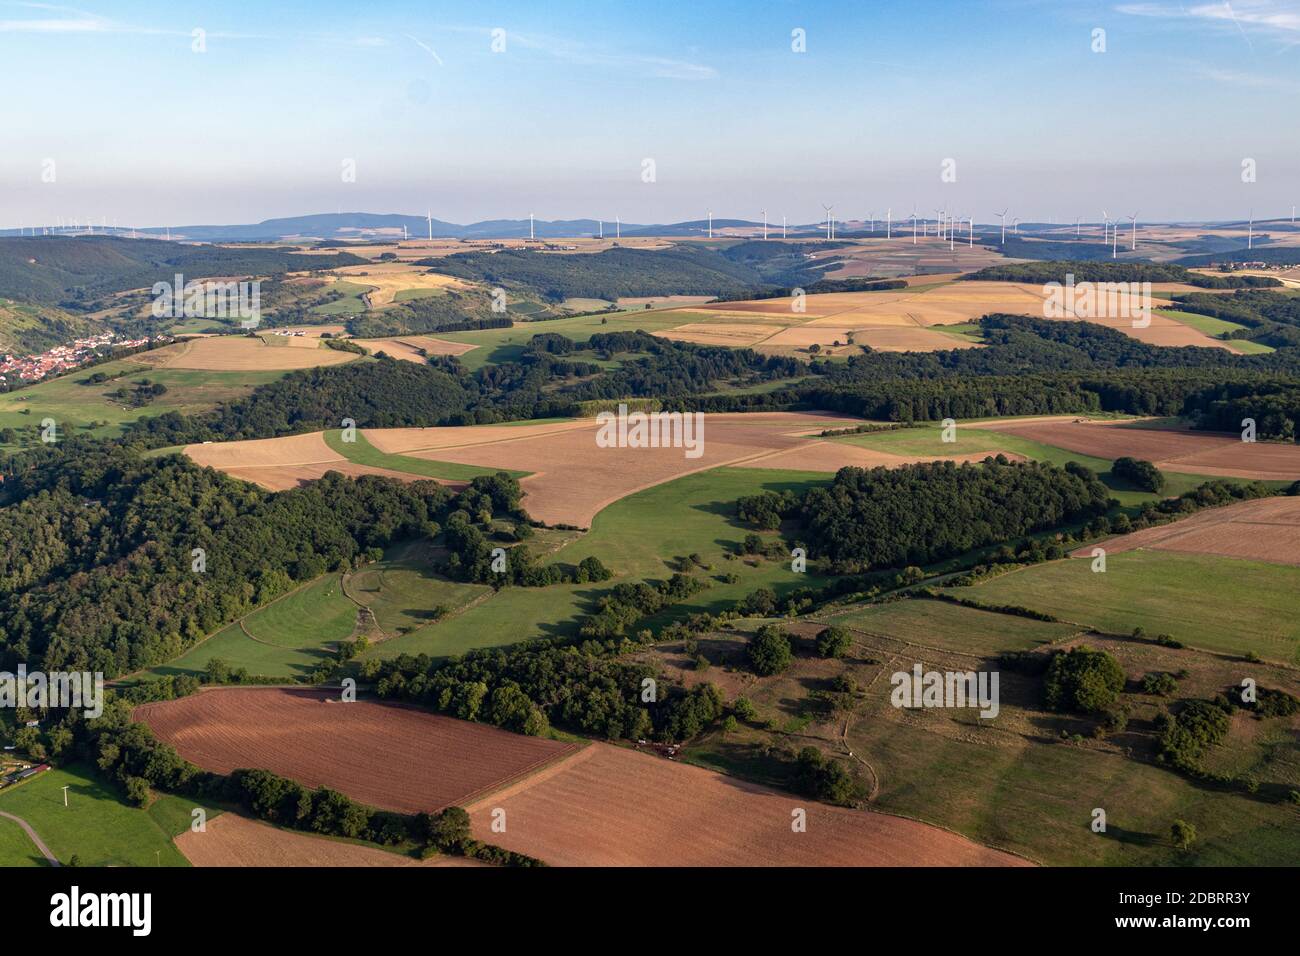 Vue aérienne dans un paysage en Allemagne, Rhénanie Palatinat près de Bad Sobernheim avec prairie, terres agricoles, forêt, collines, montagnes Banque D'Images